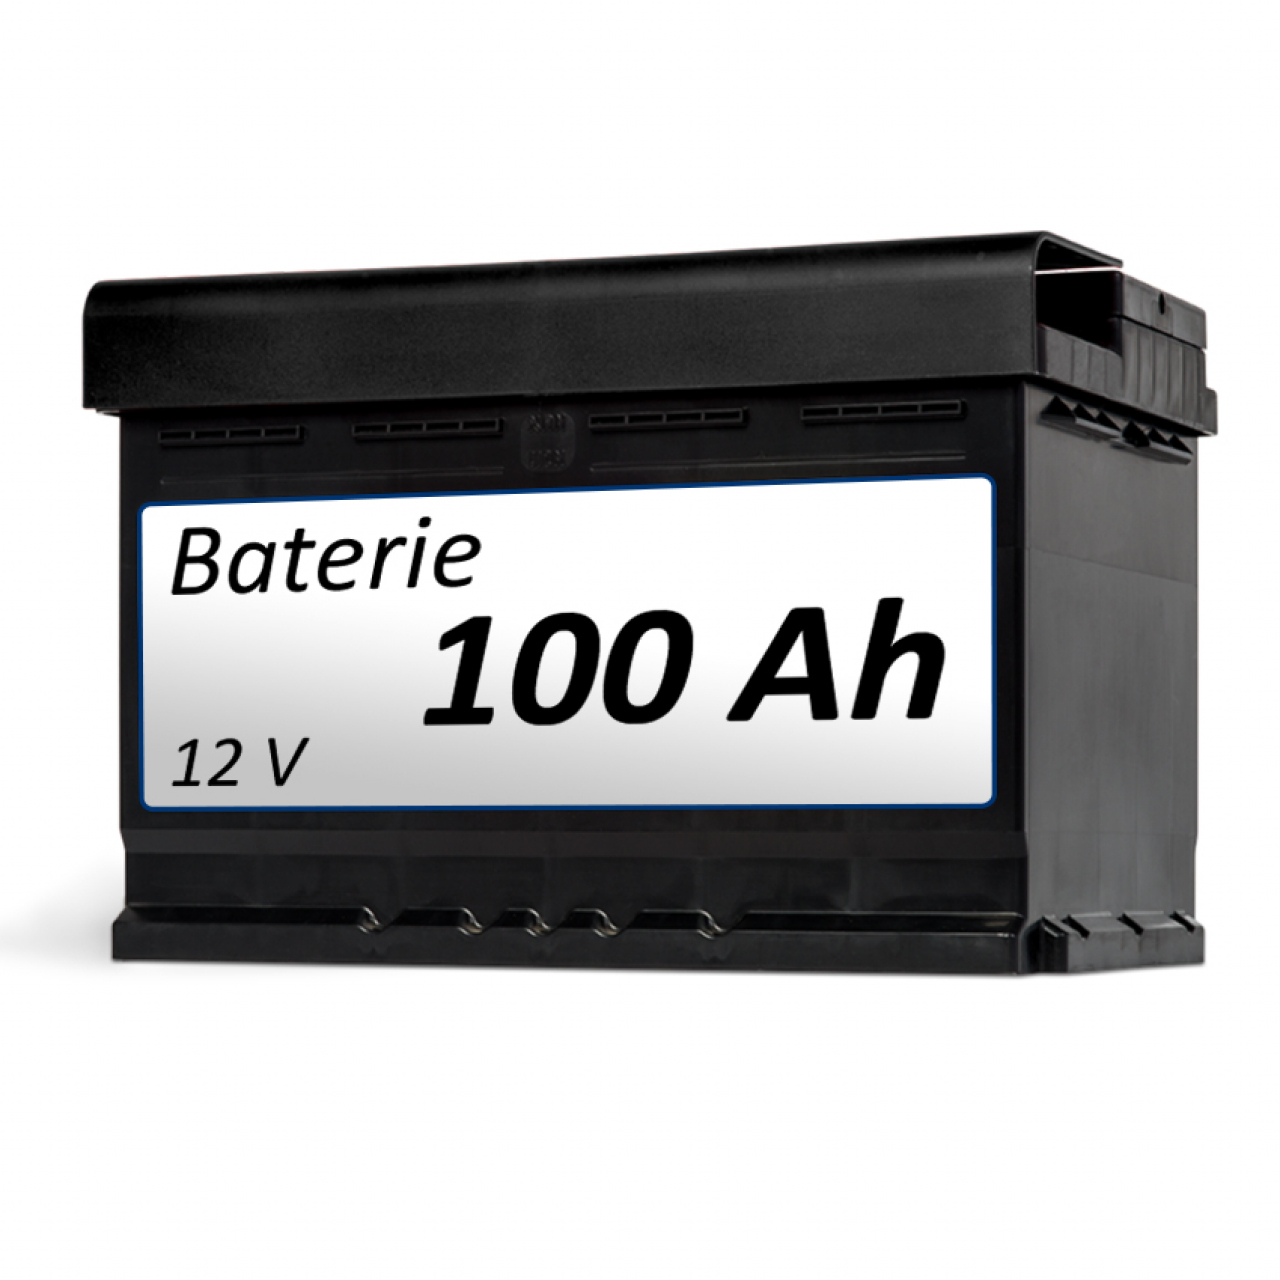 Baterie k elektrickému vozíku Baterie 100 Ah - k vozíku foto